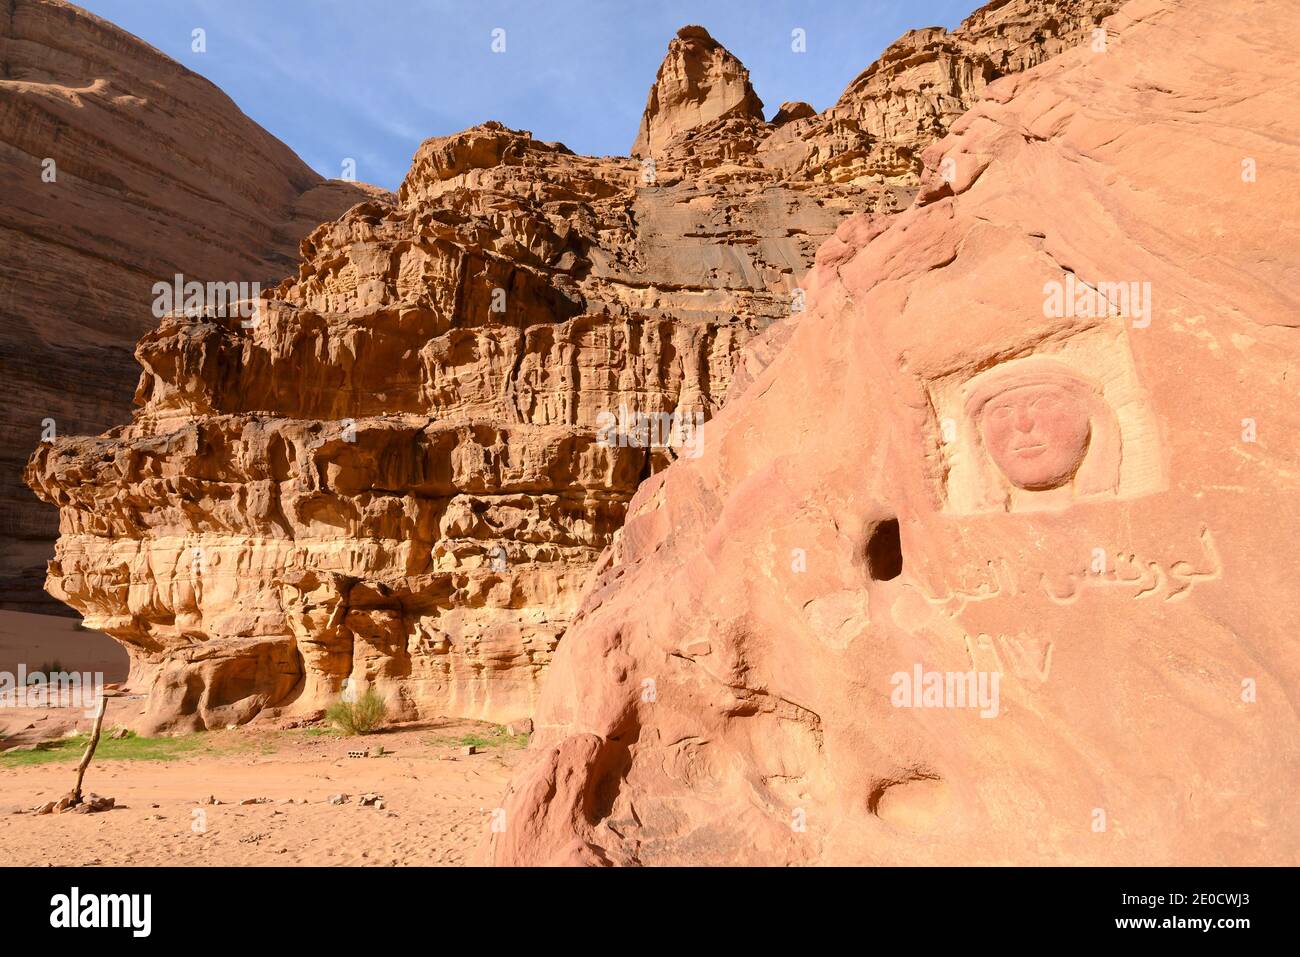 Lawrence d'Arabie face à la sculpture dans le désert de Wadi Rum en Jordanie. Effigy T. E. Lawrence sculpté dans la roche. Banque D'Images